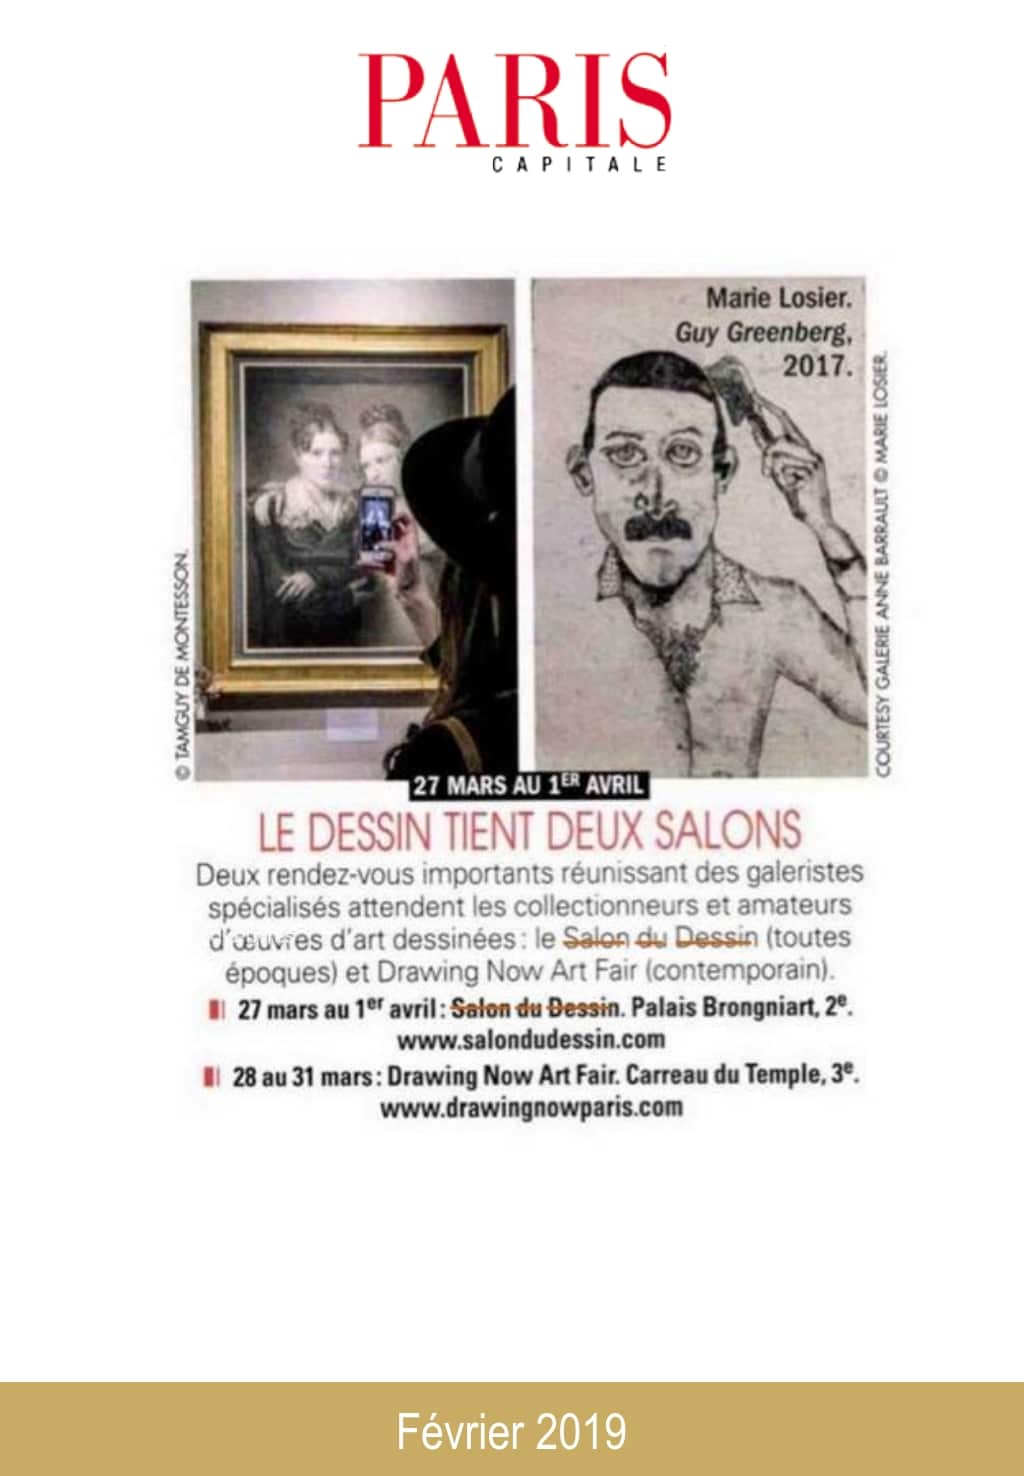 Article de presse du Salon du Dessin 2019 : Paris Capitale